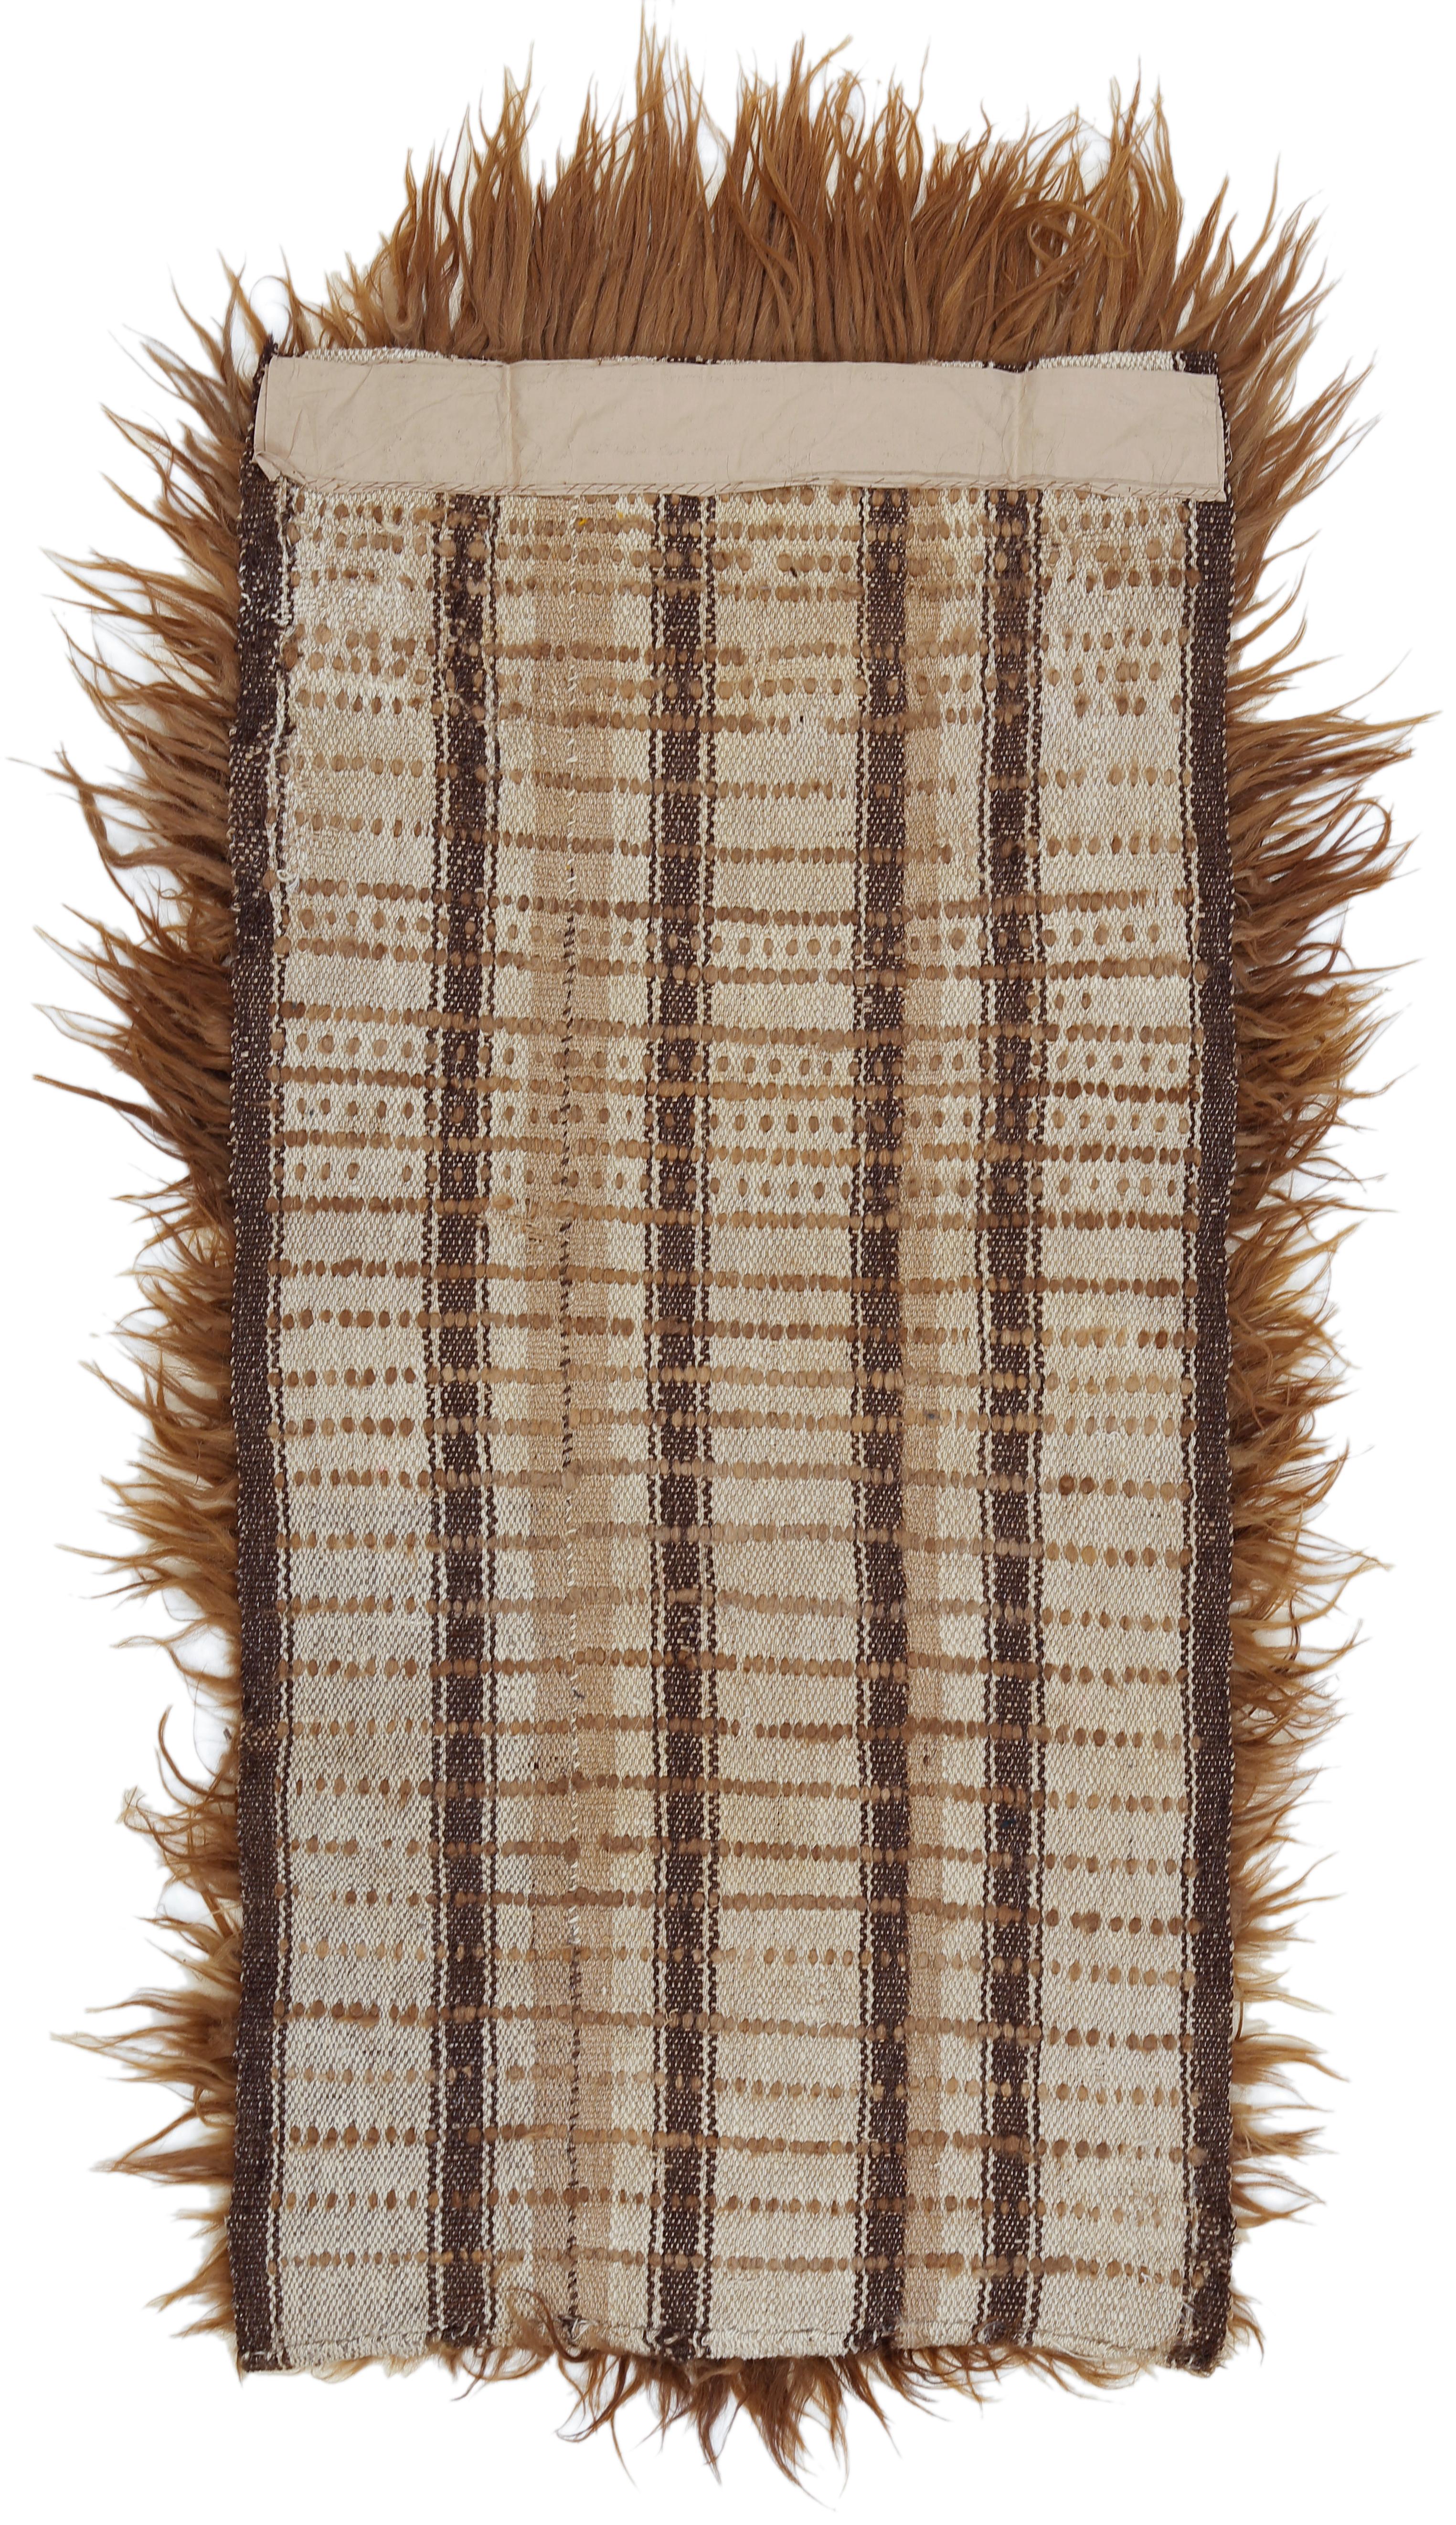 Ein sehr seltener Teppich aus der Taklamakan-Wüste im Nordwesten Chinas, der nur spärlich mit Strängen aus ungesponnenem Kamelhaar geknüpft ist. Jede Knotenreihe ist durch eine beträchtliche Anzahl von Wollschüssen getrennt, was zu einem Grundgewebe